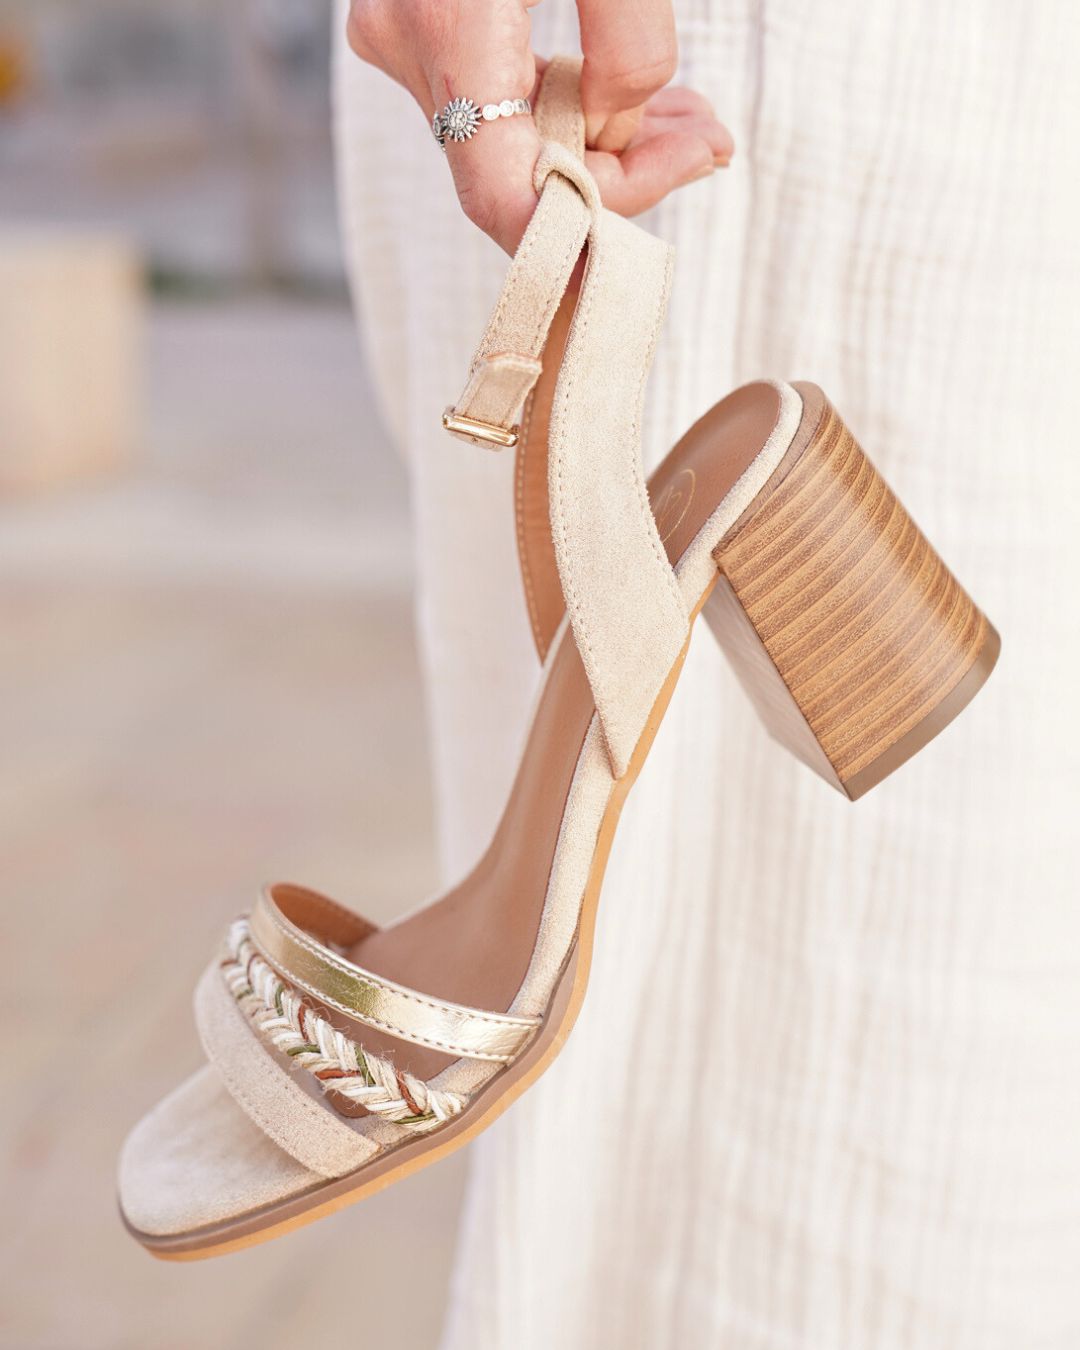 Sandale femme talon carré beige - Lylou